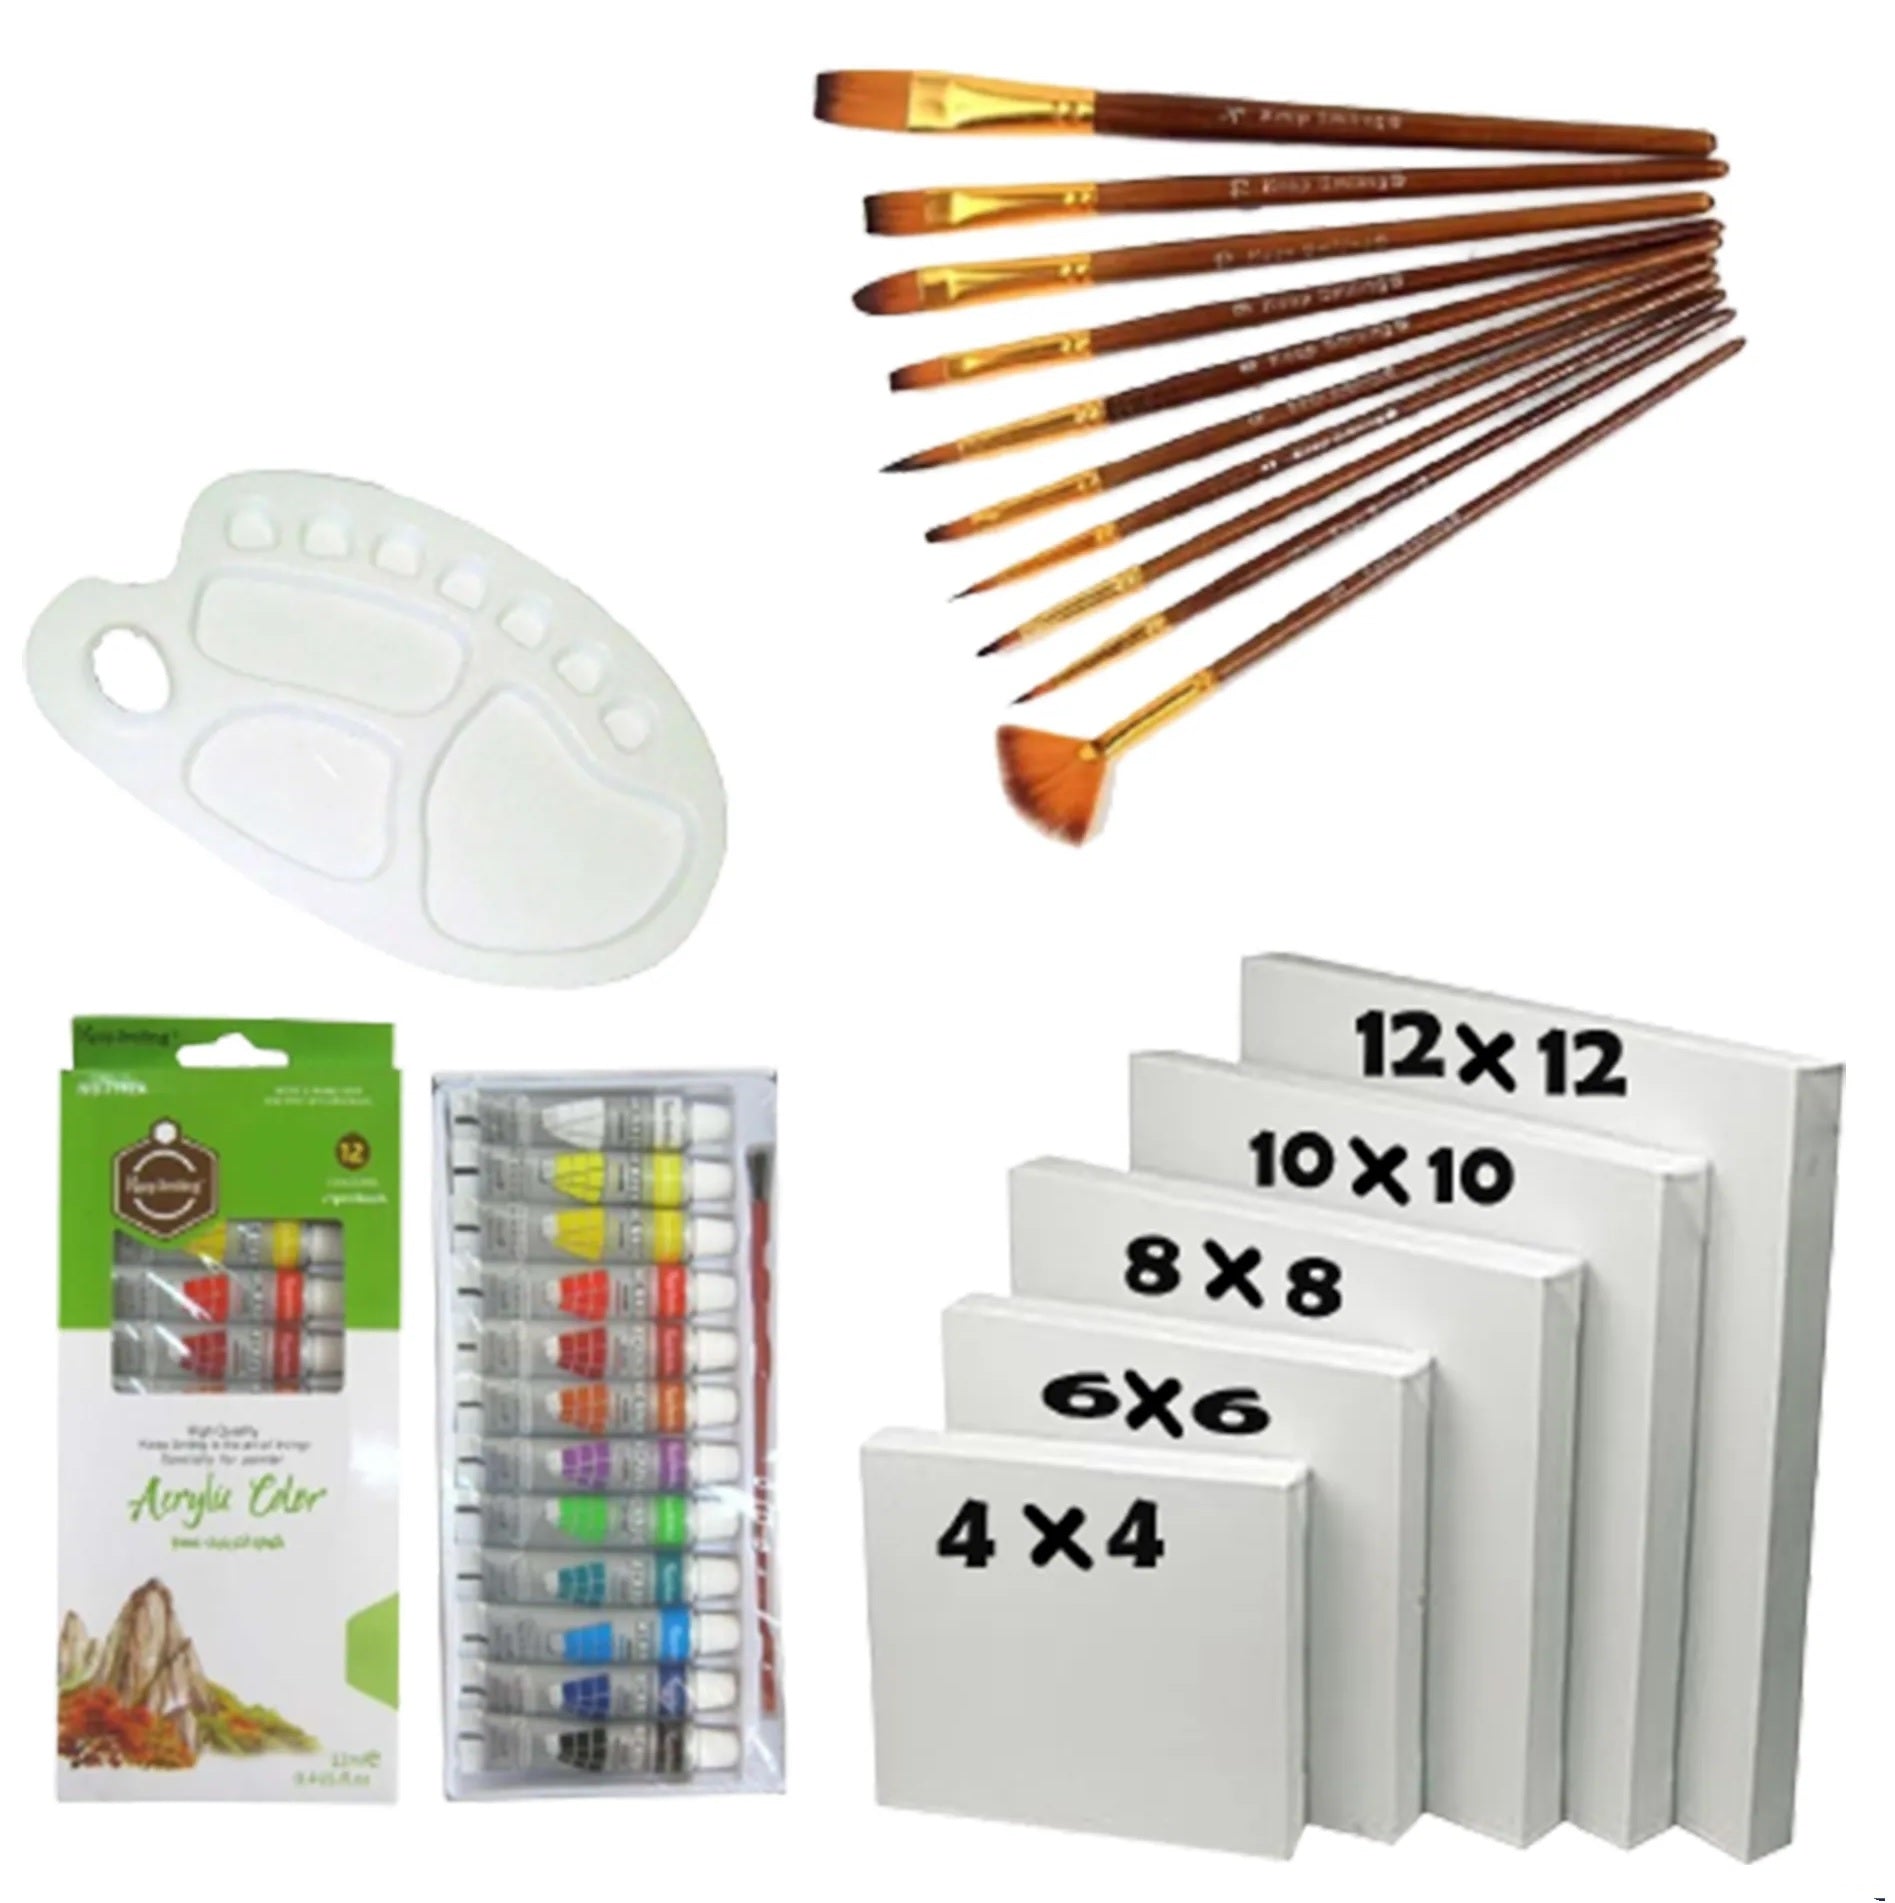 17 Pcs Set Value Pack For Artist  5pcs Canvases SIZE 4X4,6X6,8X8,10X10,12X12, 12pcs Acrylic Paint set , 10pcs Multi Shape Brush set  With 10 Wells Palette